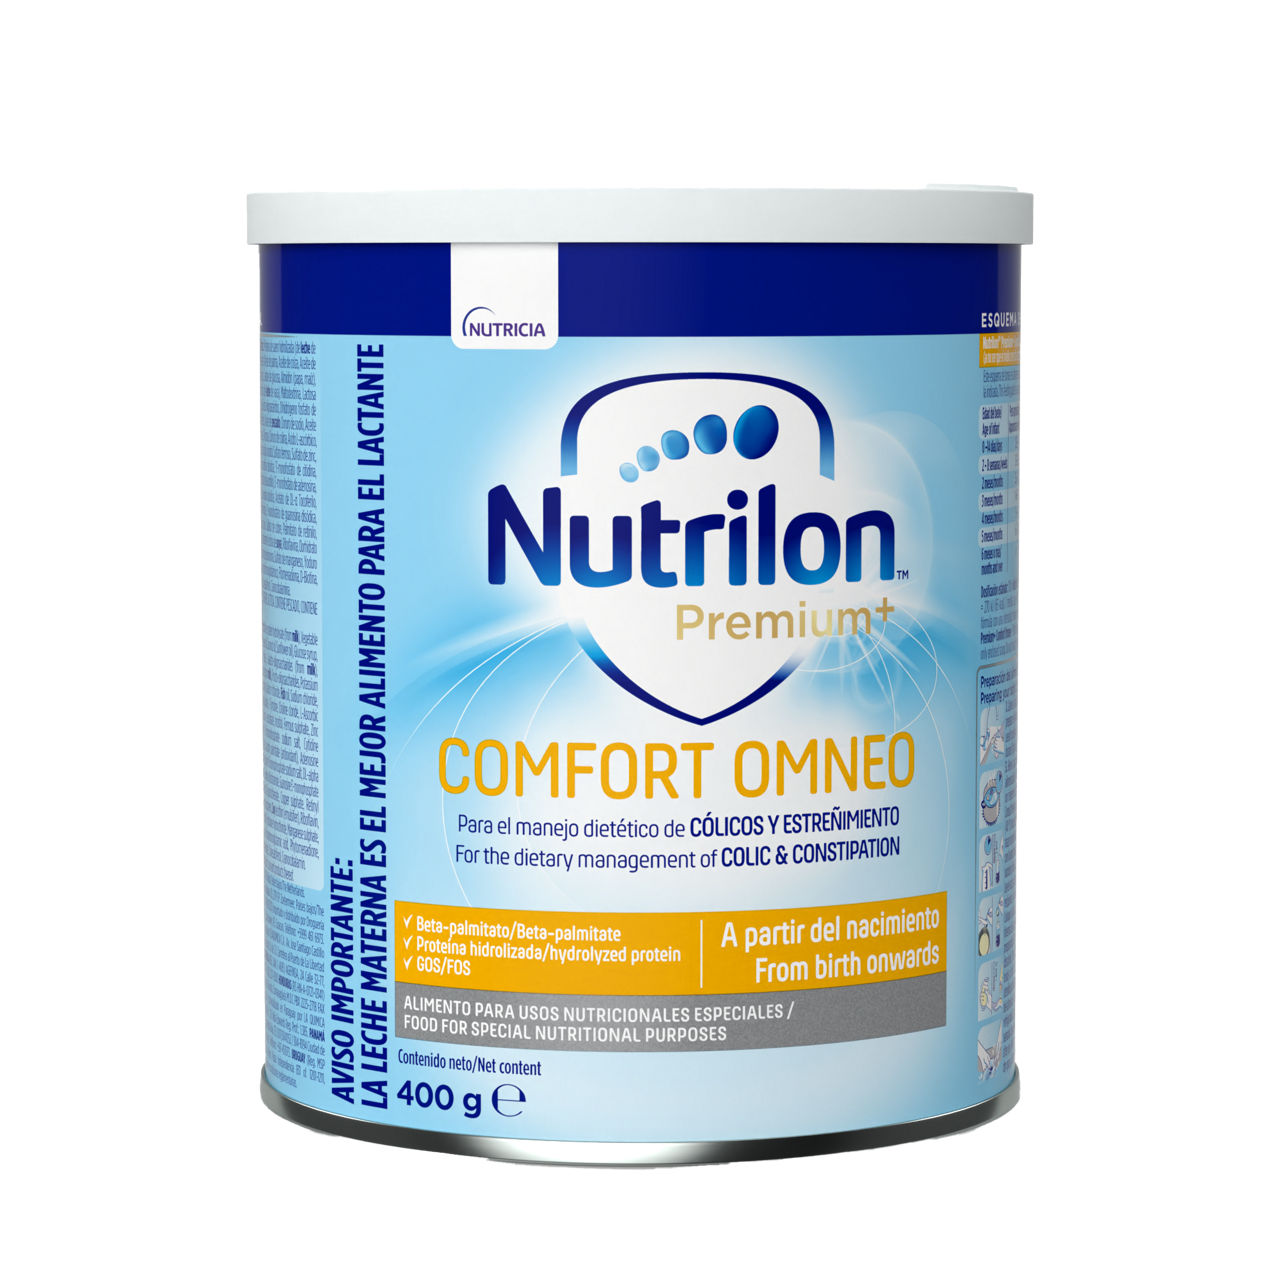 Nutrilon Premium+ Comfort Ecu